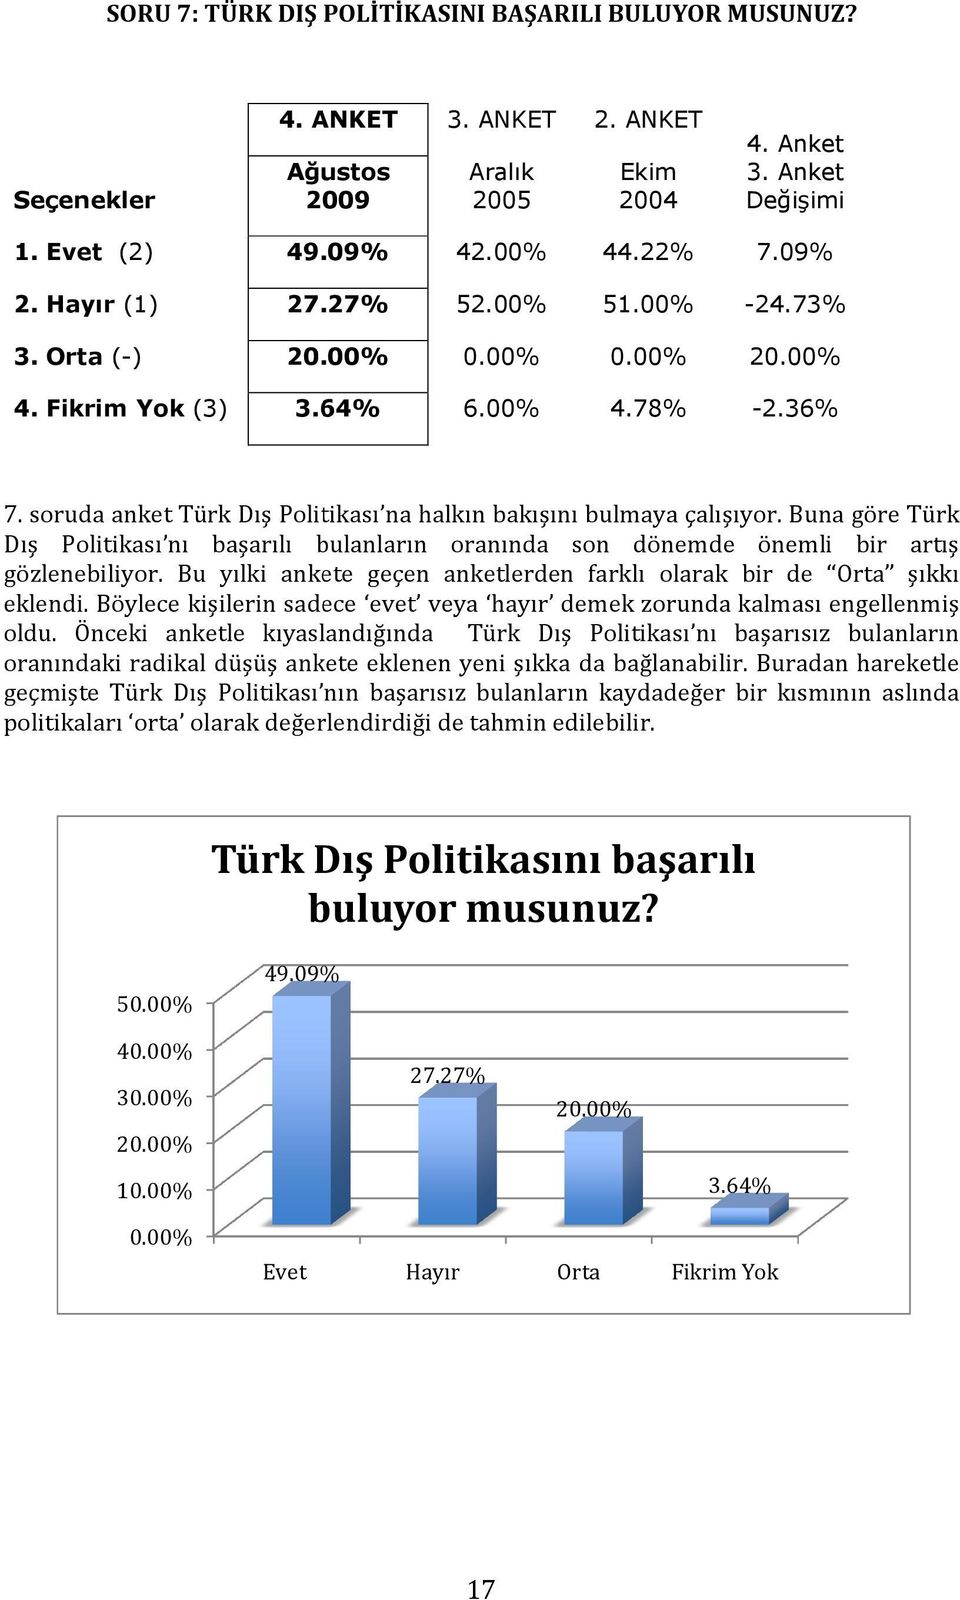 Buna göre Türk Dış Politikası nı başarılı bulanların oranında son dönemde önemli bir artış gözlenebiliyor. Bu yılki ankete geçen anketlerden farklı olarak bir de Orta şıkkı eklendi.